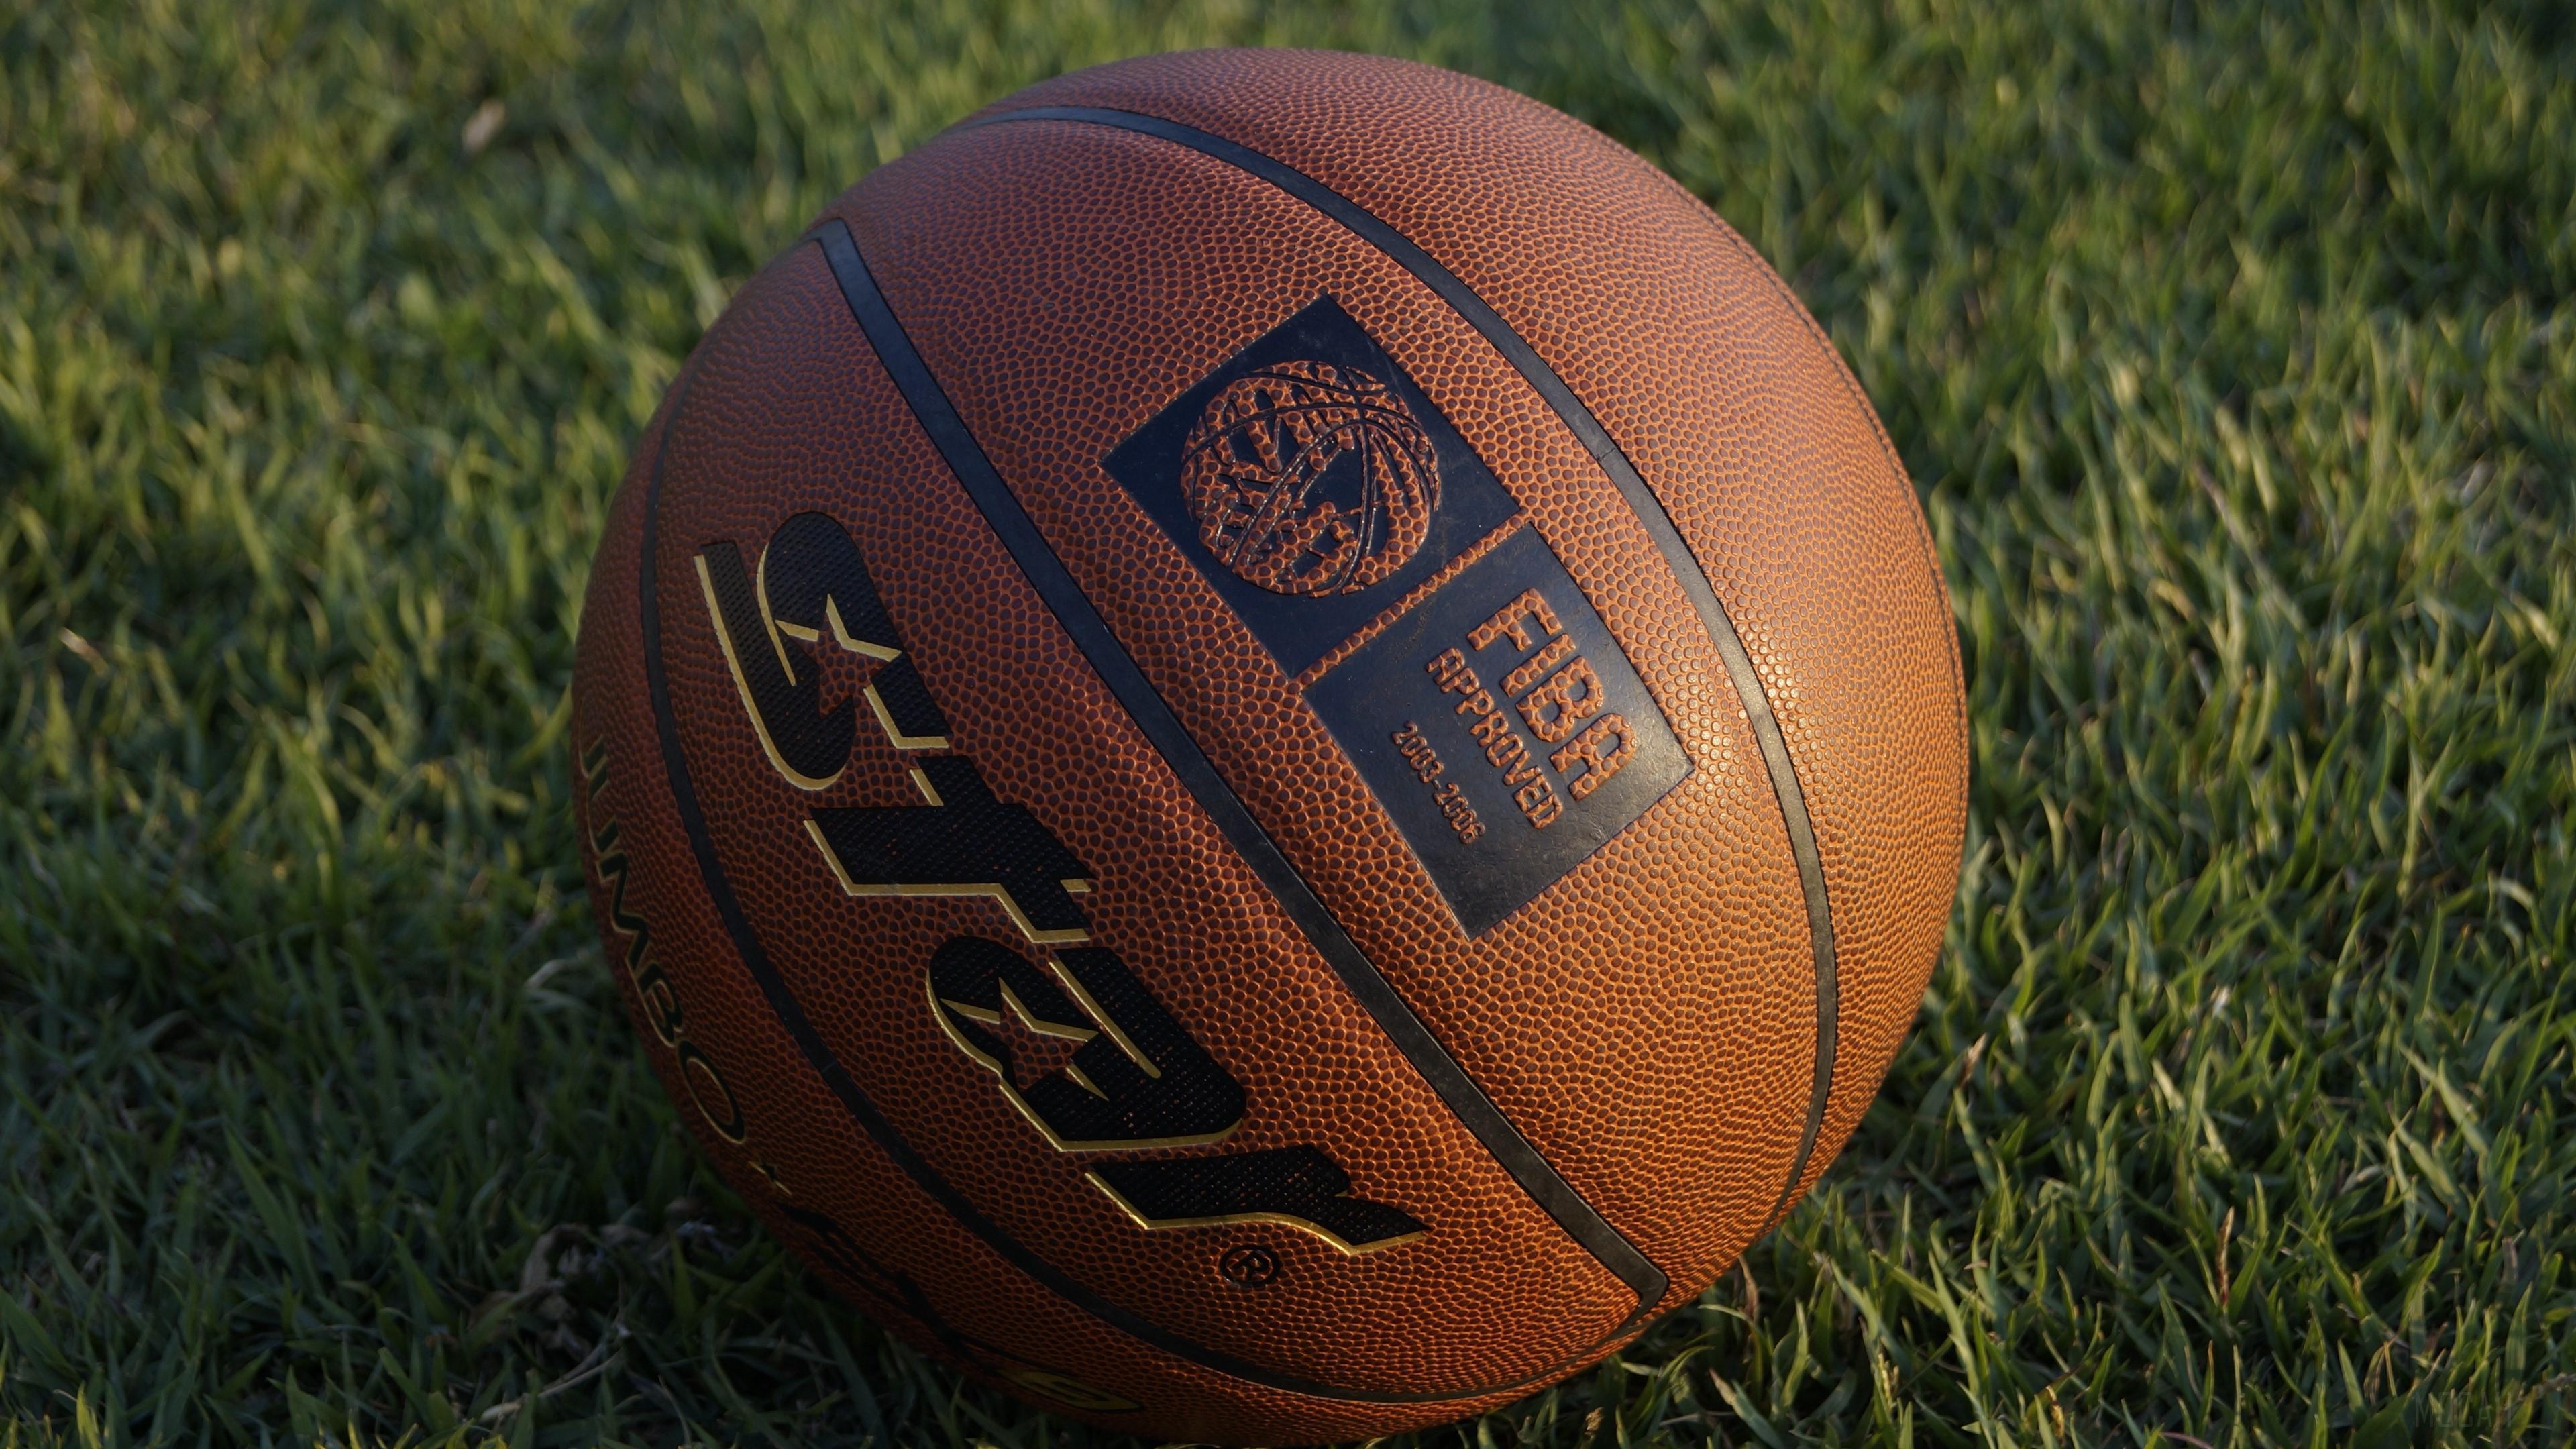 HD wallpaper, Ball, Basketball Ball, Basketball, Grass 4K